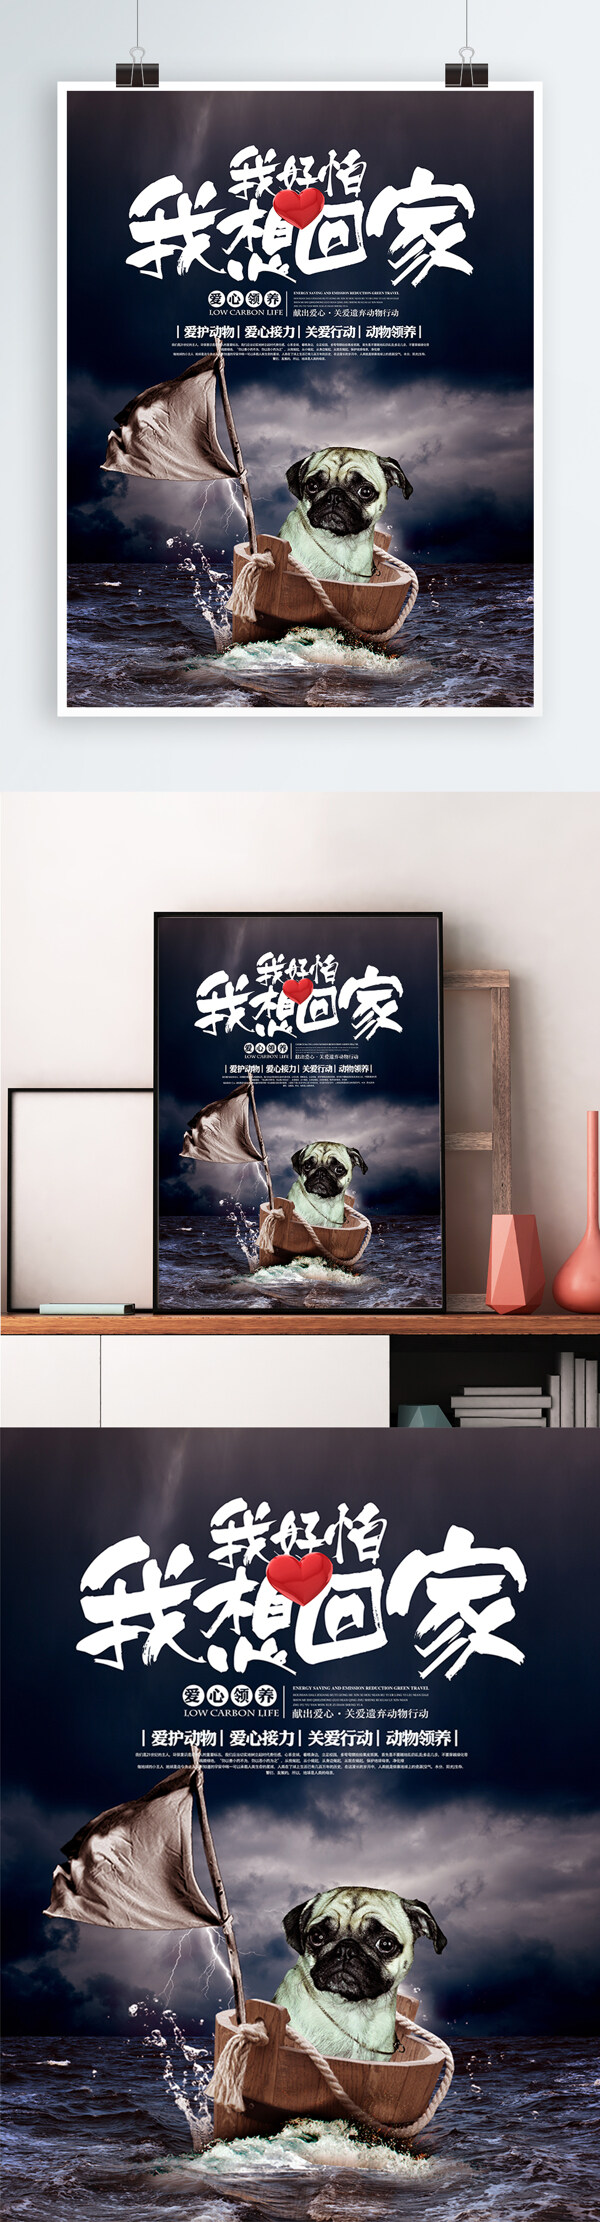 关爱动物爱心领养公益宣传海报展板